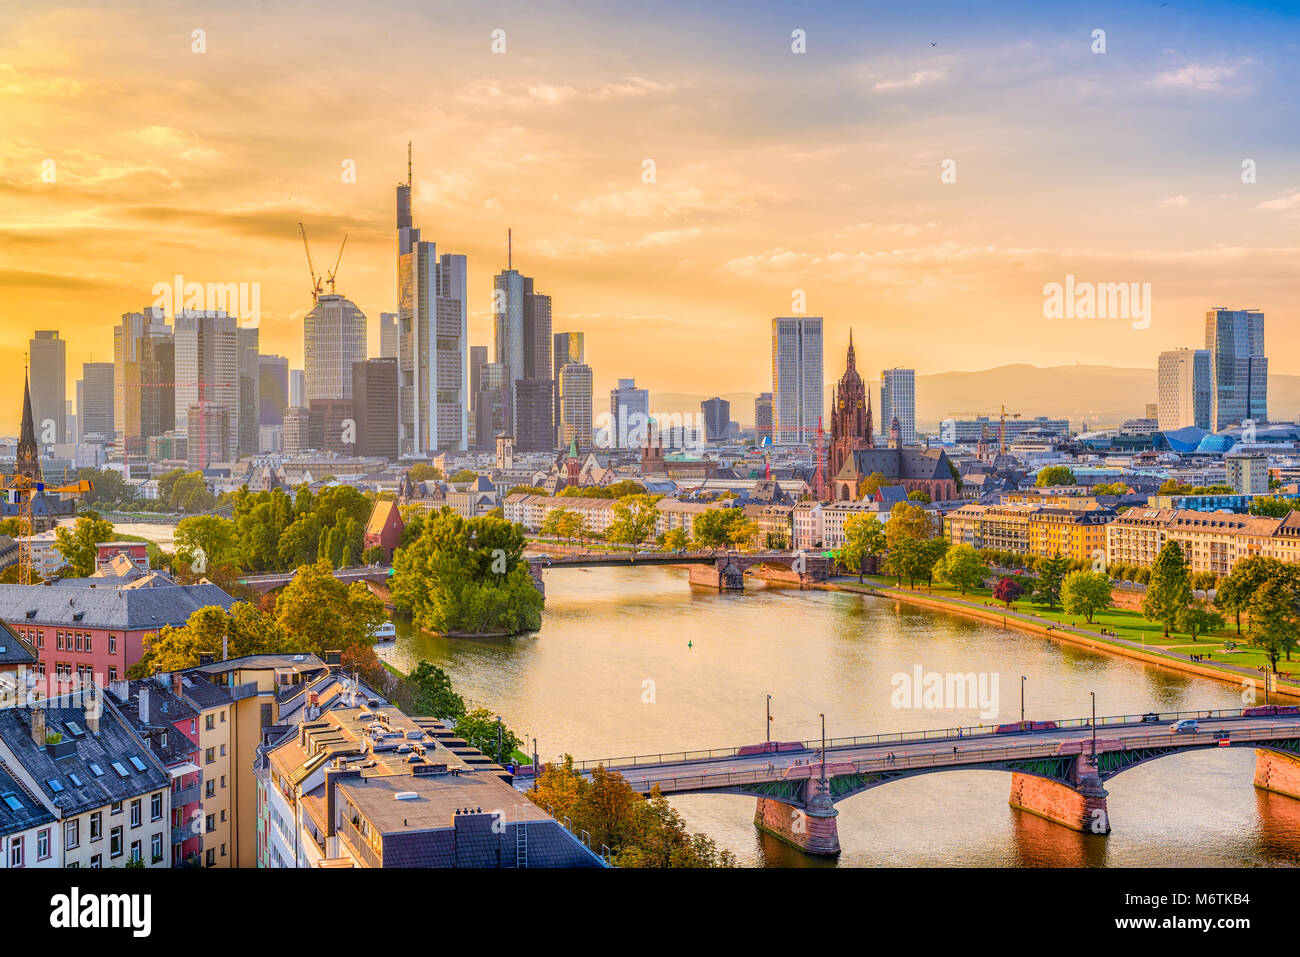 Francfort, Allemagne skyline sur le cours principal de la rivière. Banque D'Images